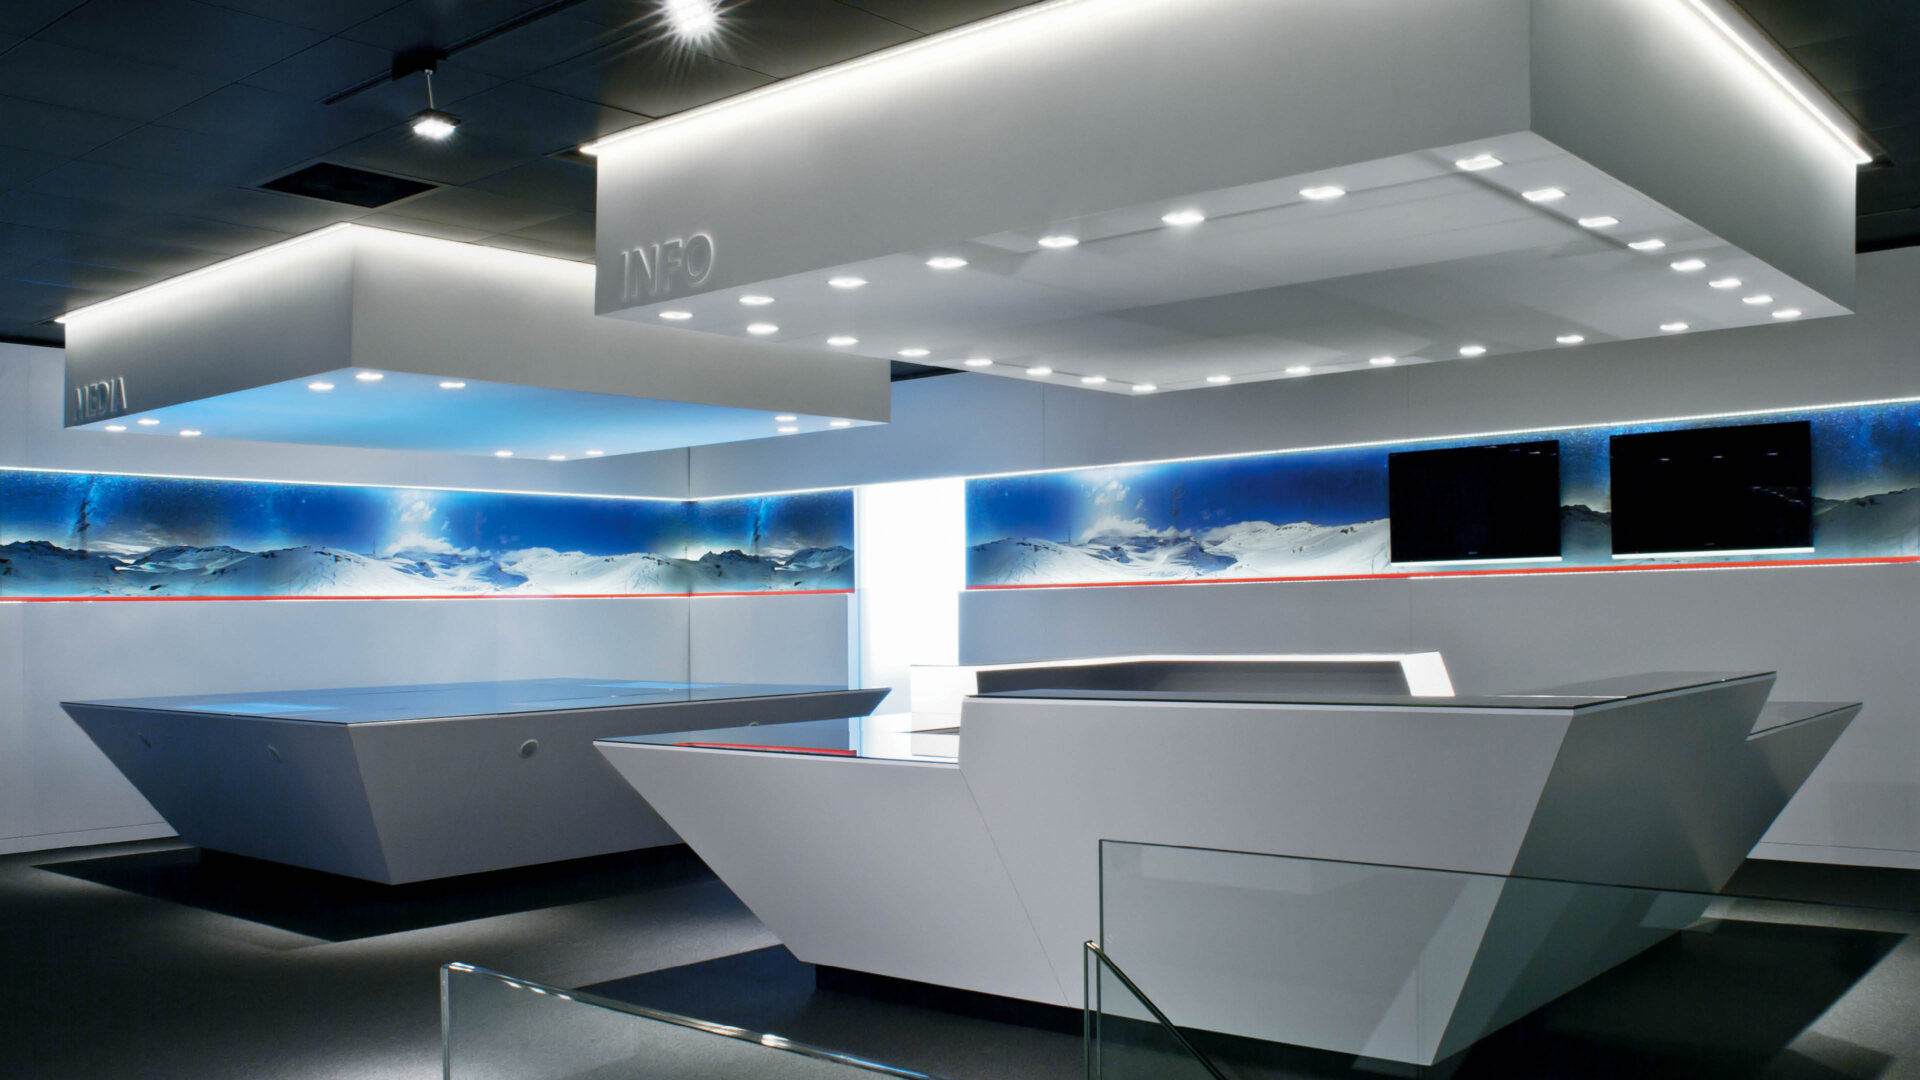 Architecture office, interior design - Daniel Huber architecture & design - Repower3